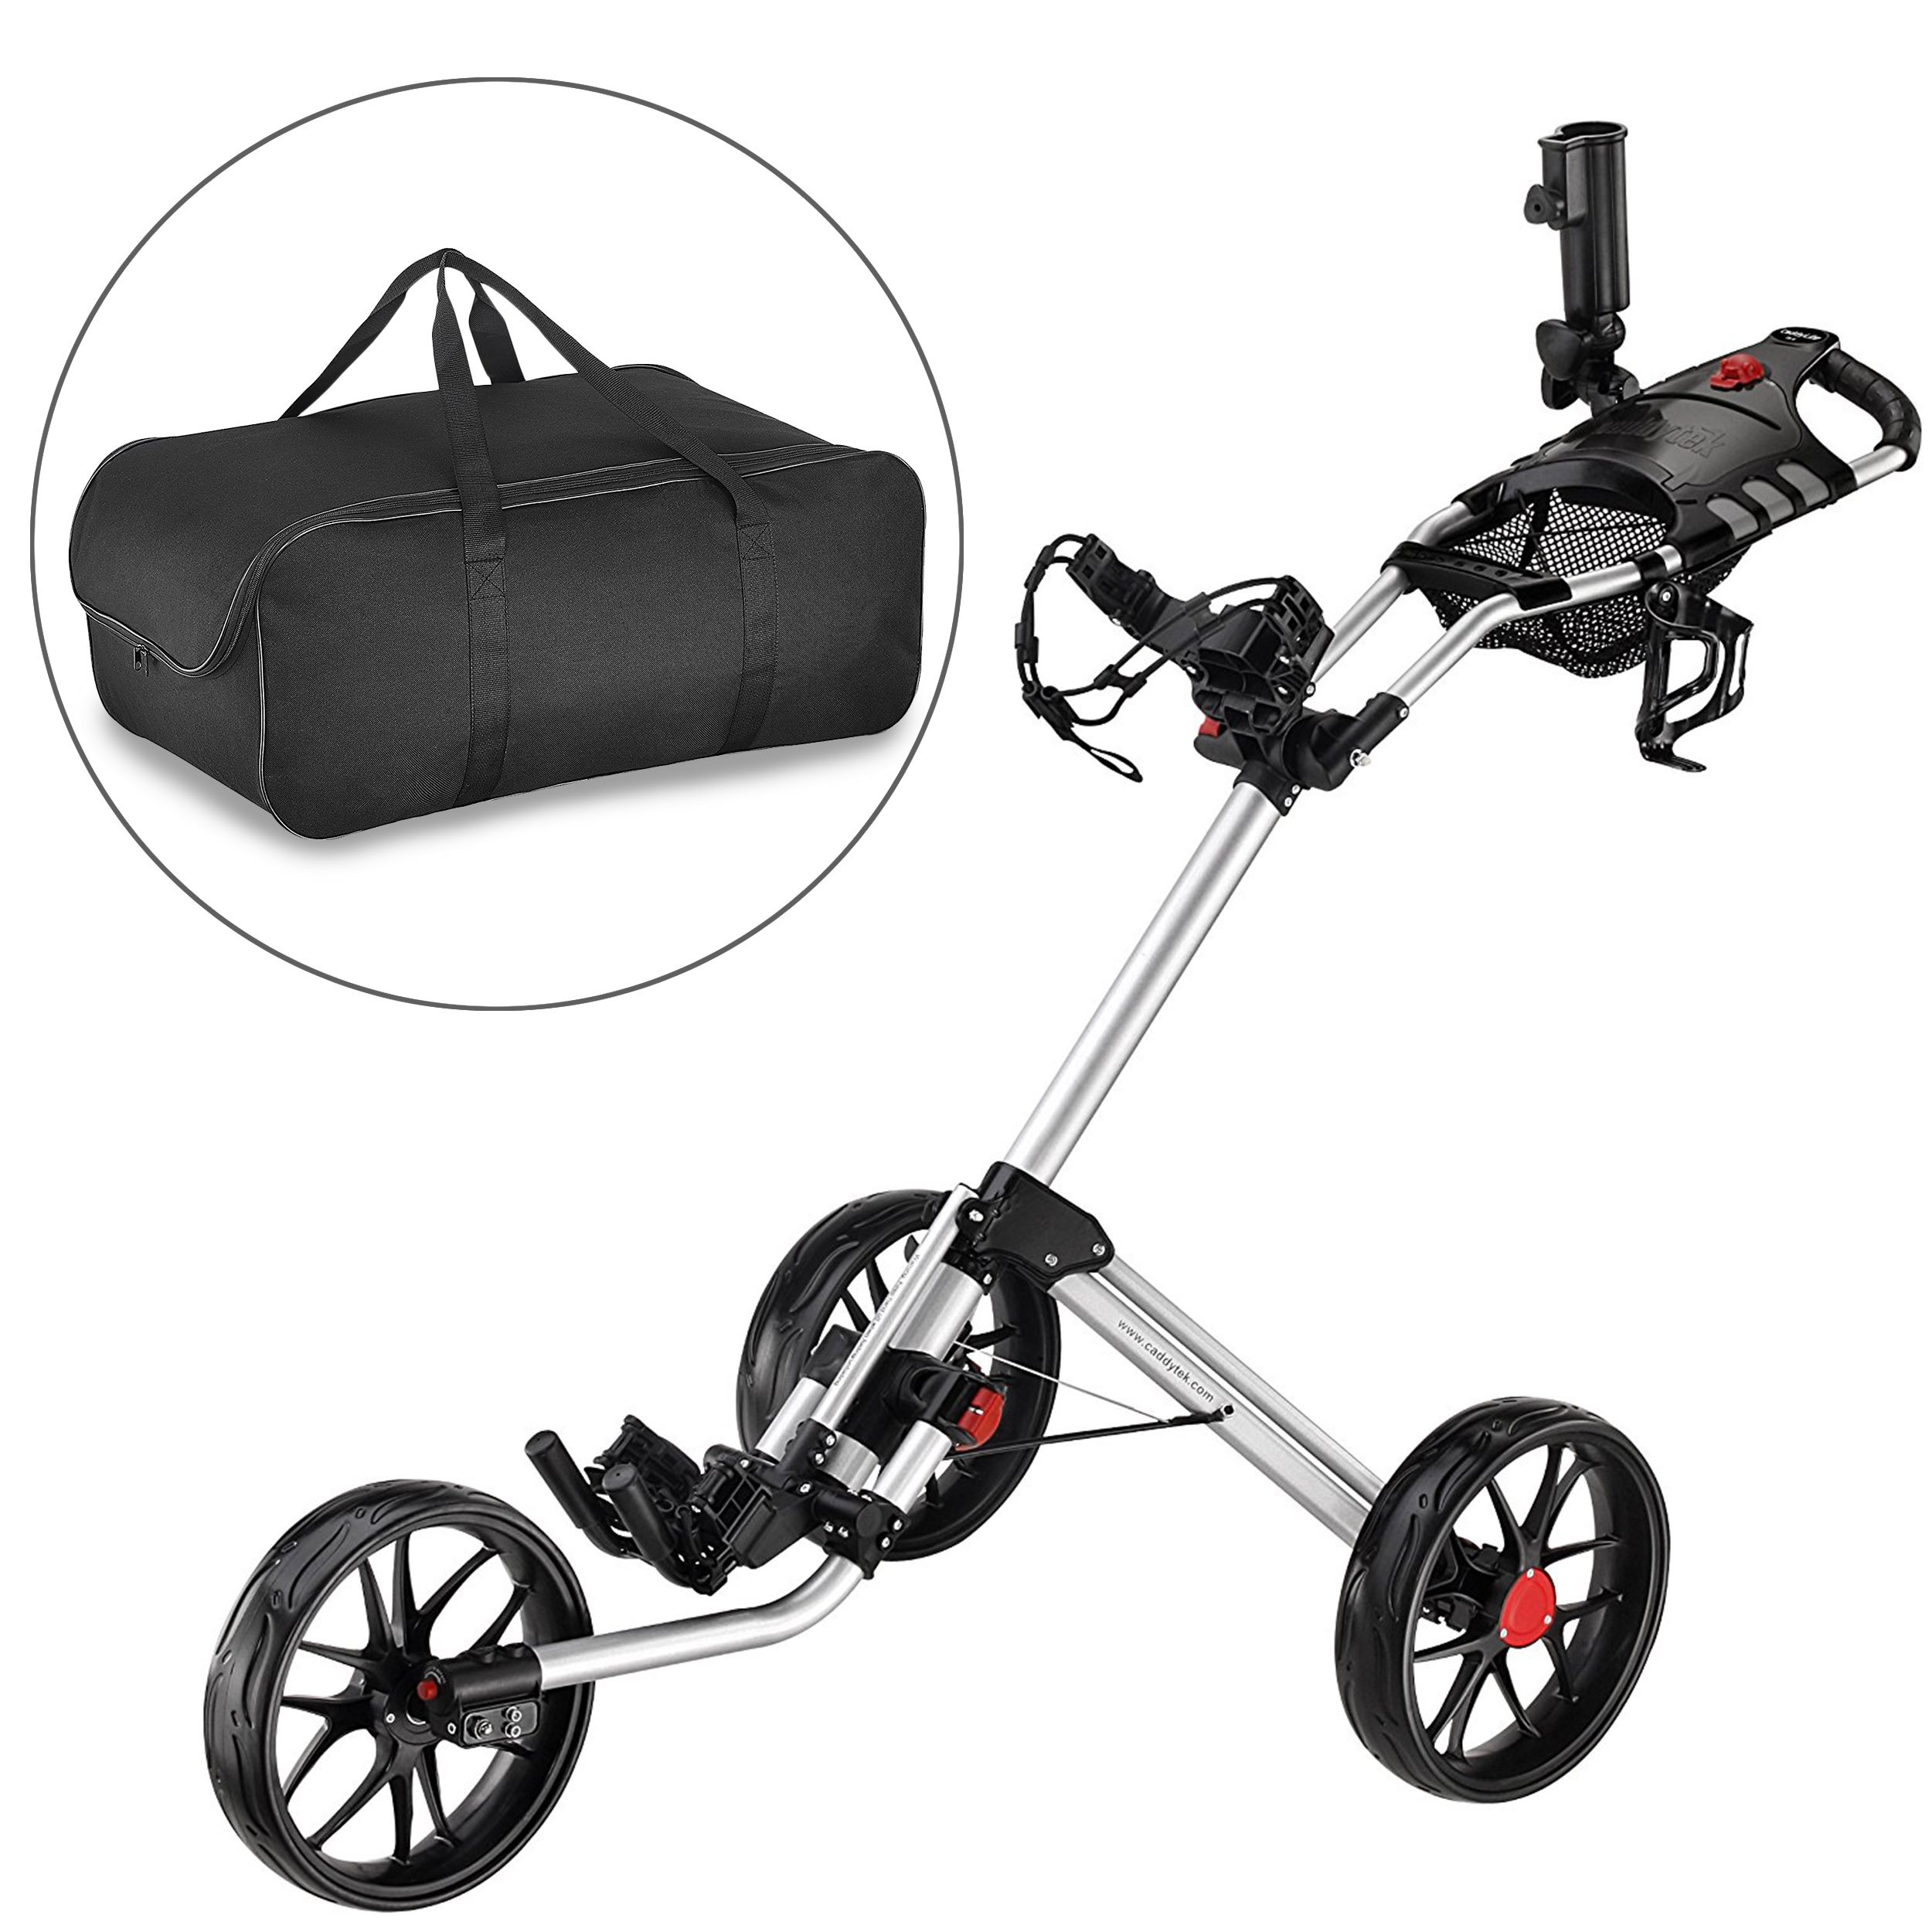 CaddyTek Super Deluxe Quad Fold Golf Cart-black with storage bag